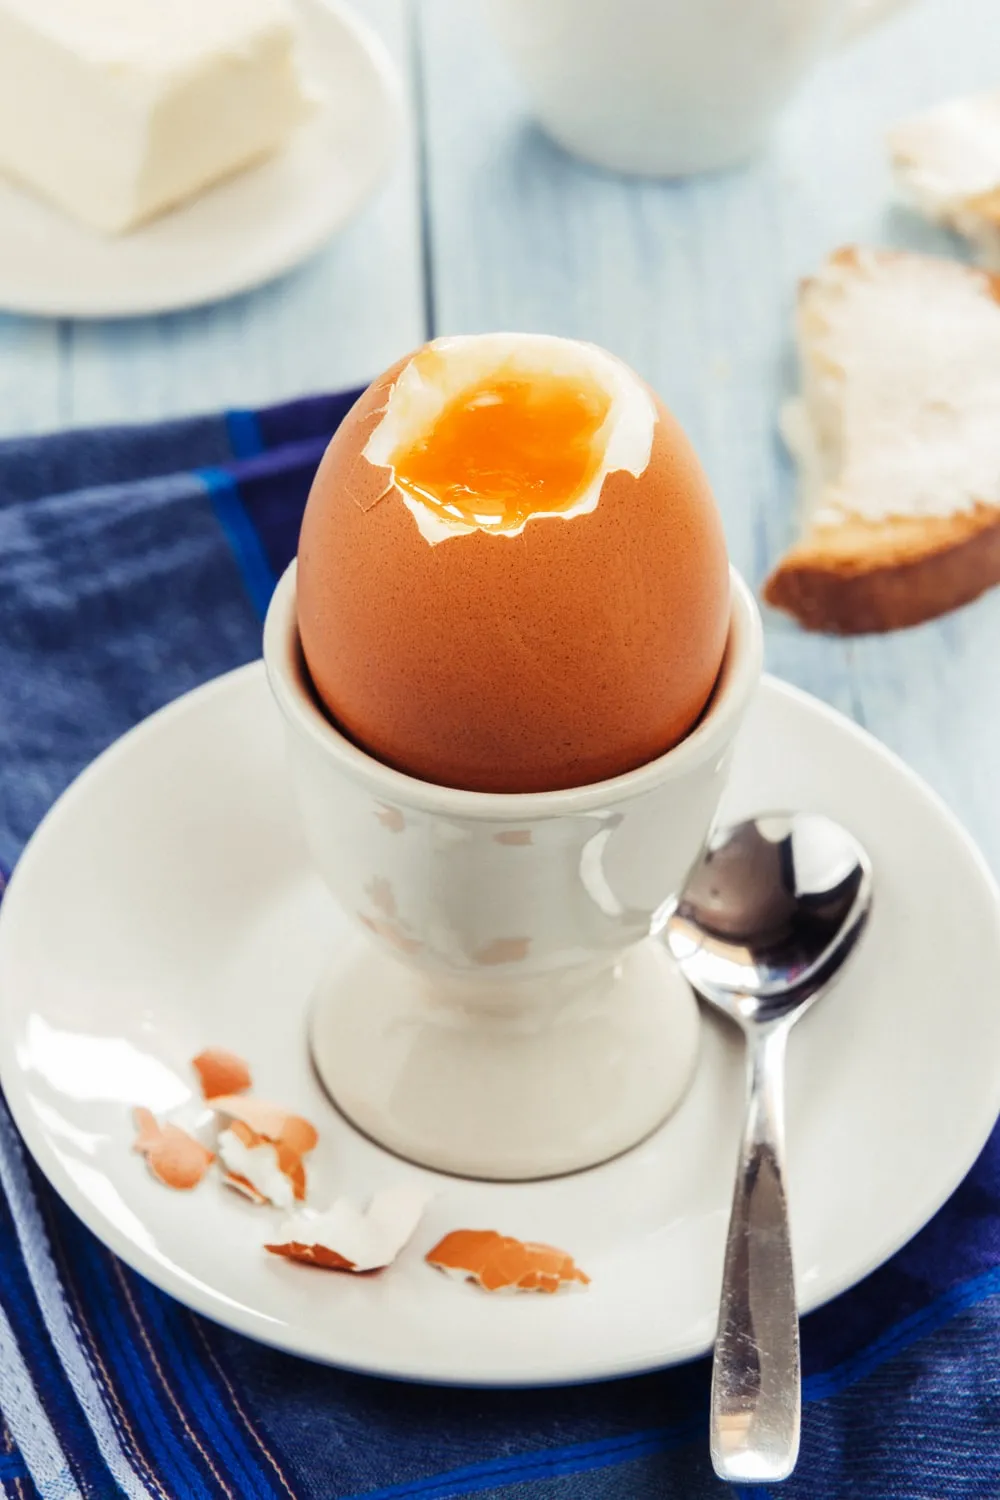 Kolik kalorií obsahuje vejce?